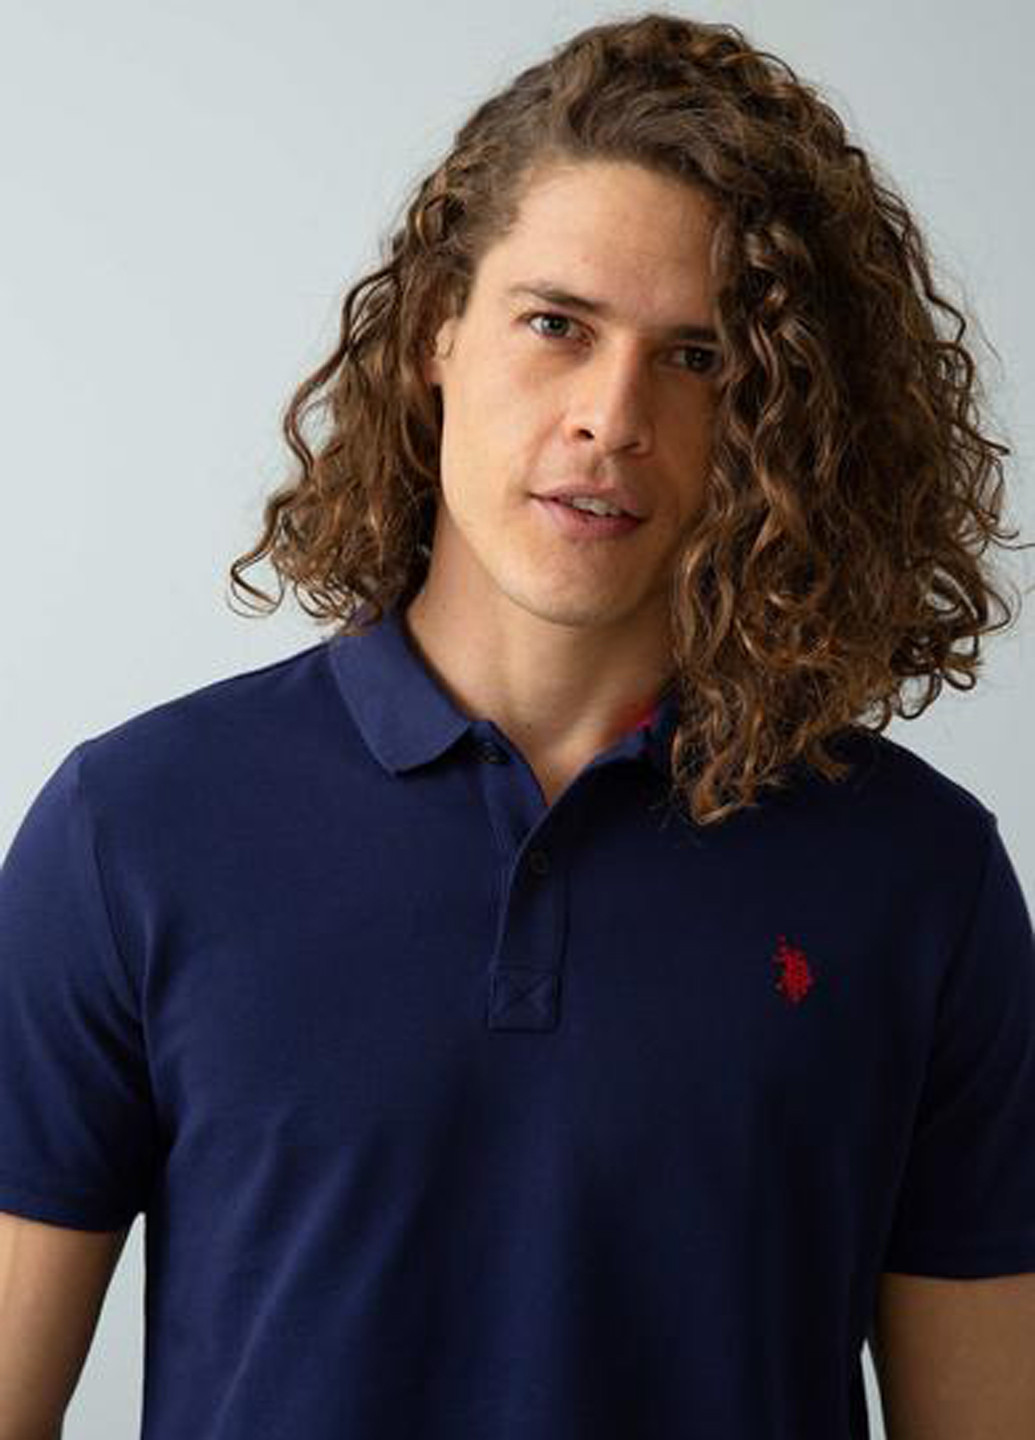 Темно-синяя футболка-поло для мужчин U.S. Polo Assn. однотонная